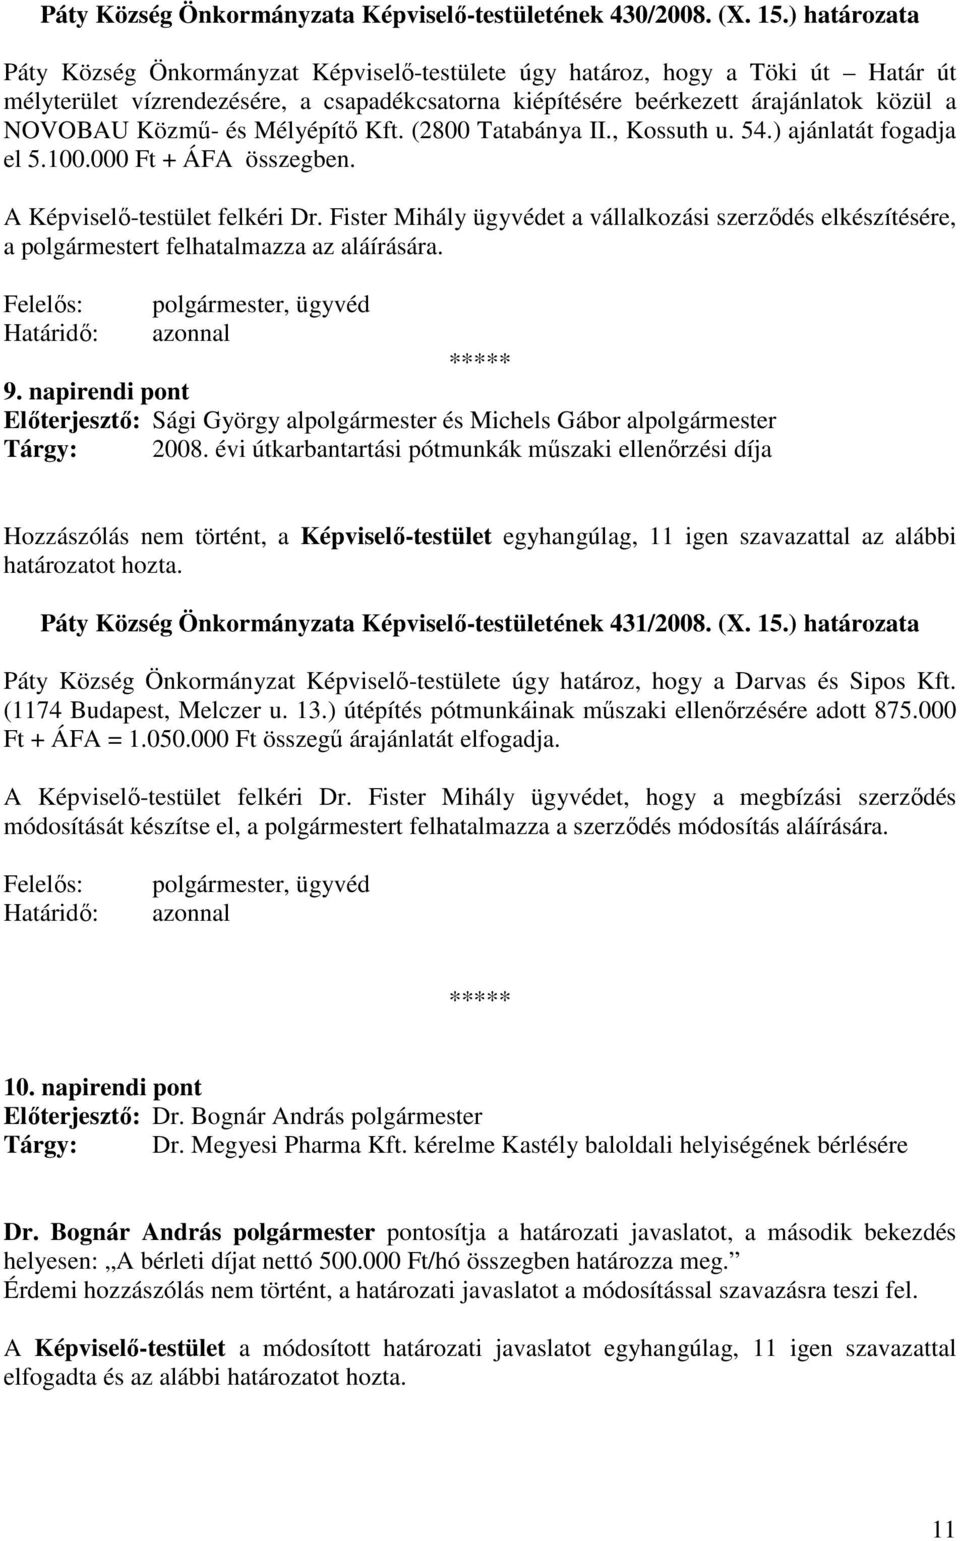 és Mélyépítı Kft. (2800 Tatabánya II., Kossuth u. 54.) ajánlatát fogadja el 5.100.000 Ft + ÁFA összegben. A Képviselı-testület felkéri Dr.